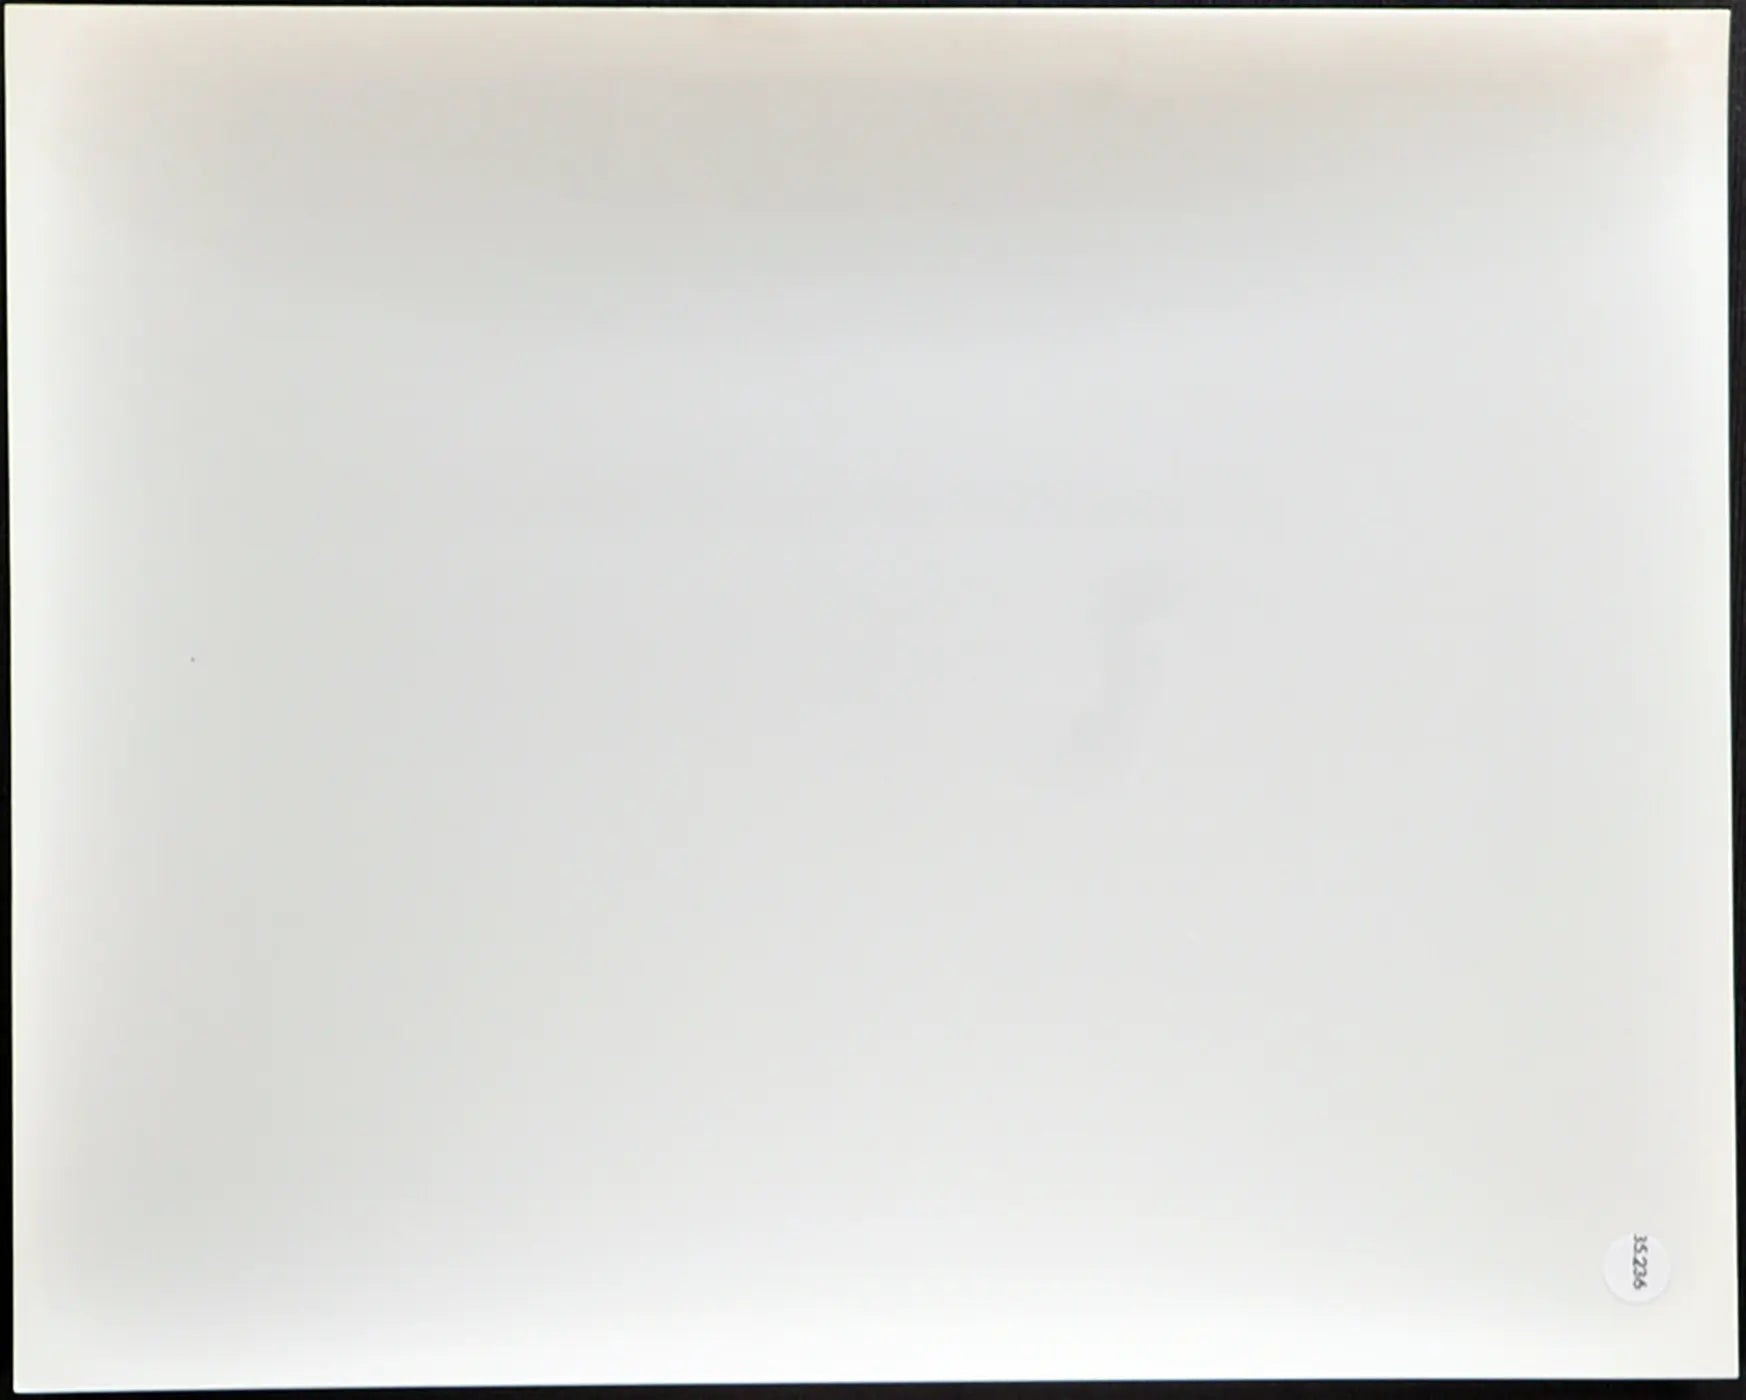 Pelè Film Fuga per la vittoria 1981 Ft 35236 - Stampa 20x25 cm - Farabola Stampa ai sali d'argento